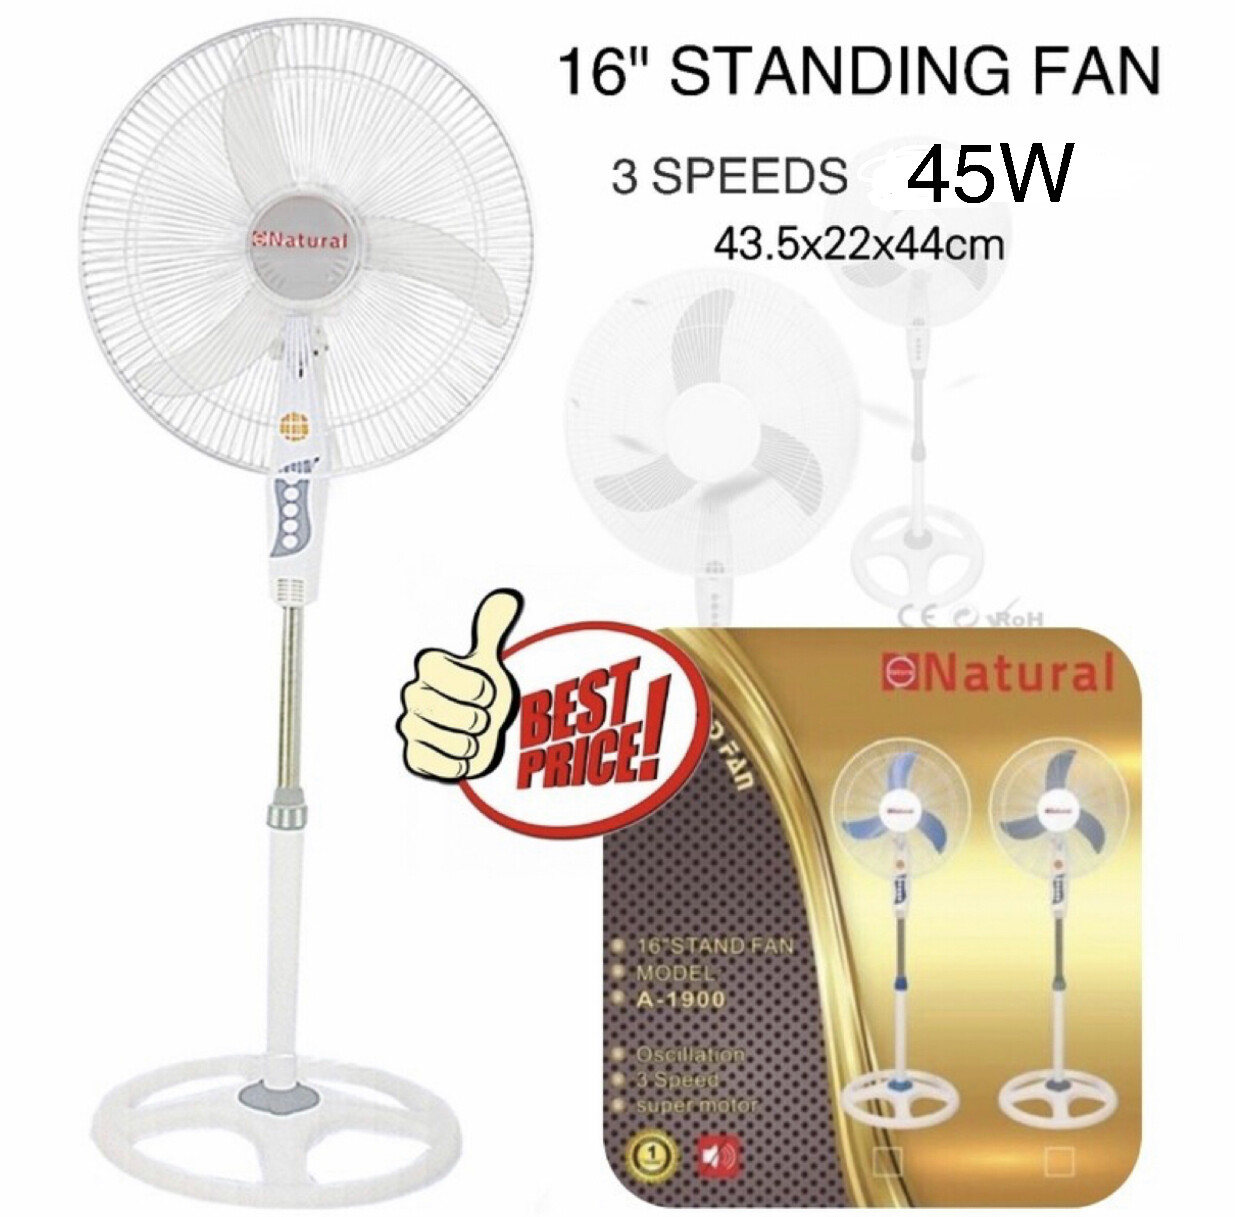 16" Electric Standing Fan